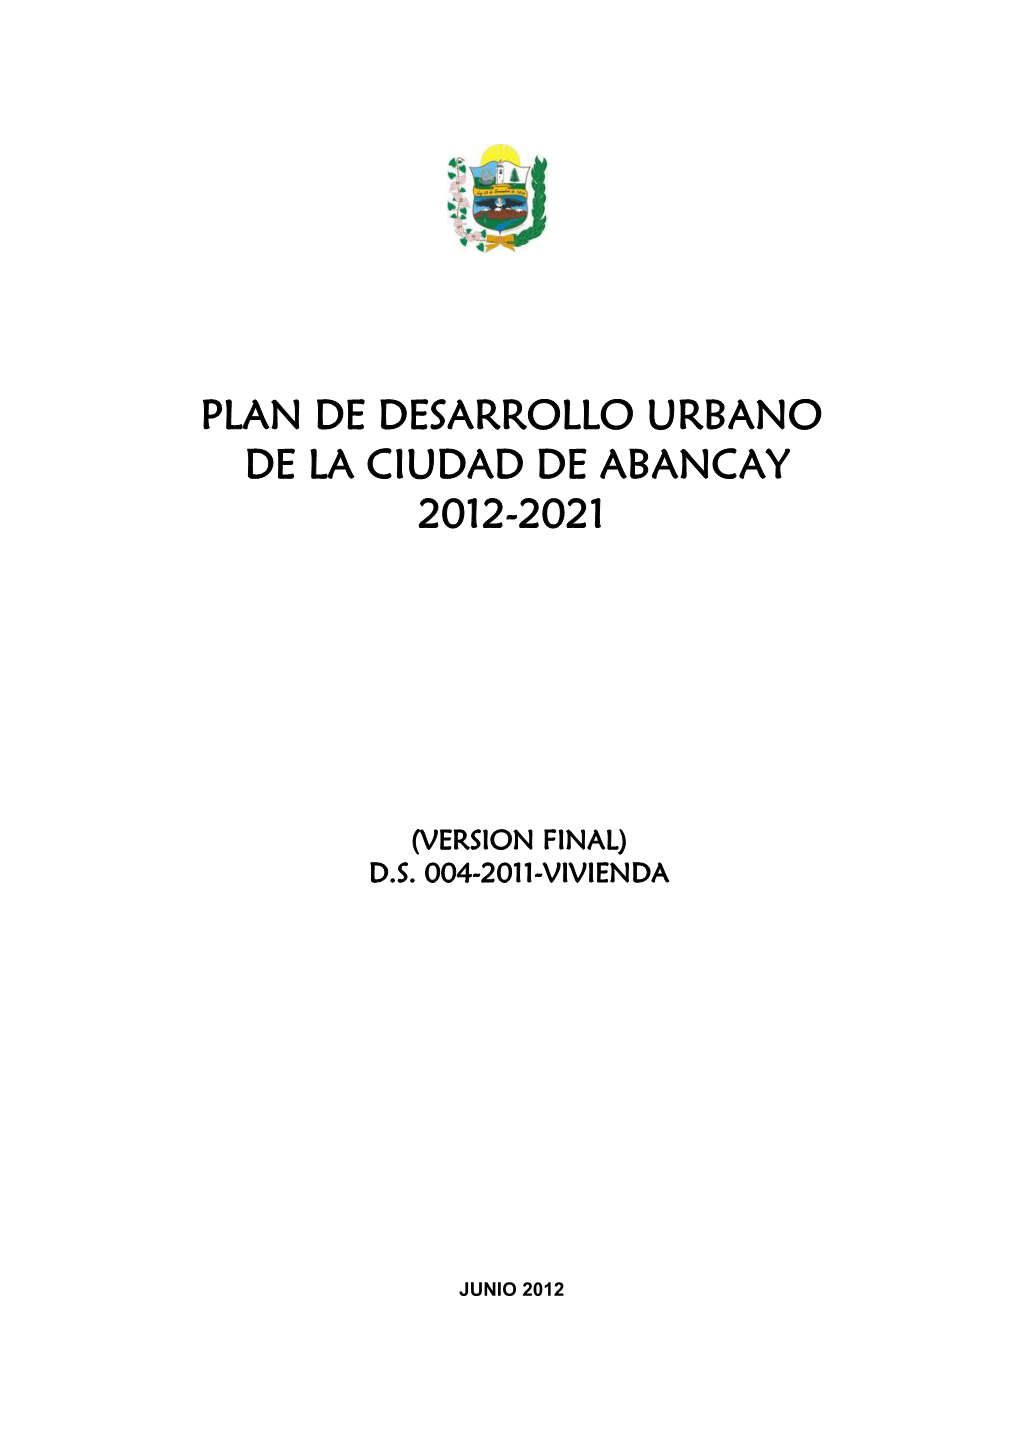 Plan De Desarrollo Urbano De La Ciudad De Abancay 2012-2021